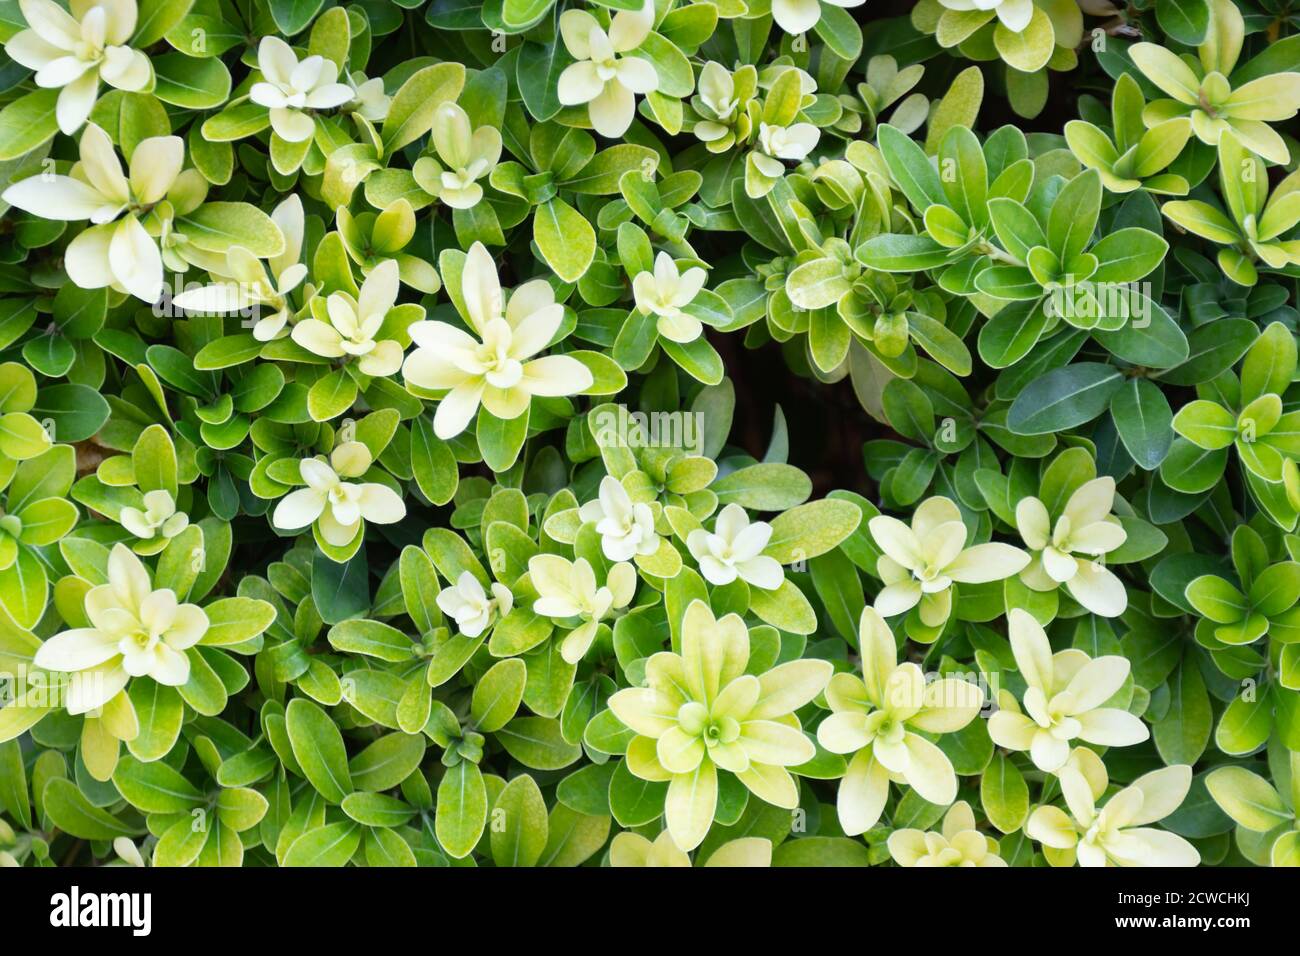 Background of green foliage of tropical plant pittosporum tobira Stock Photo